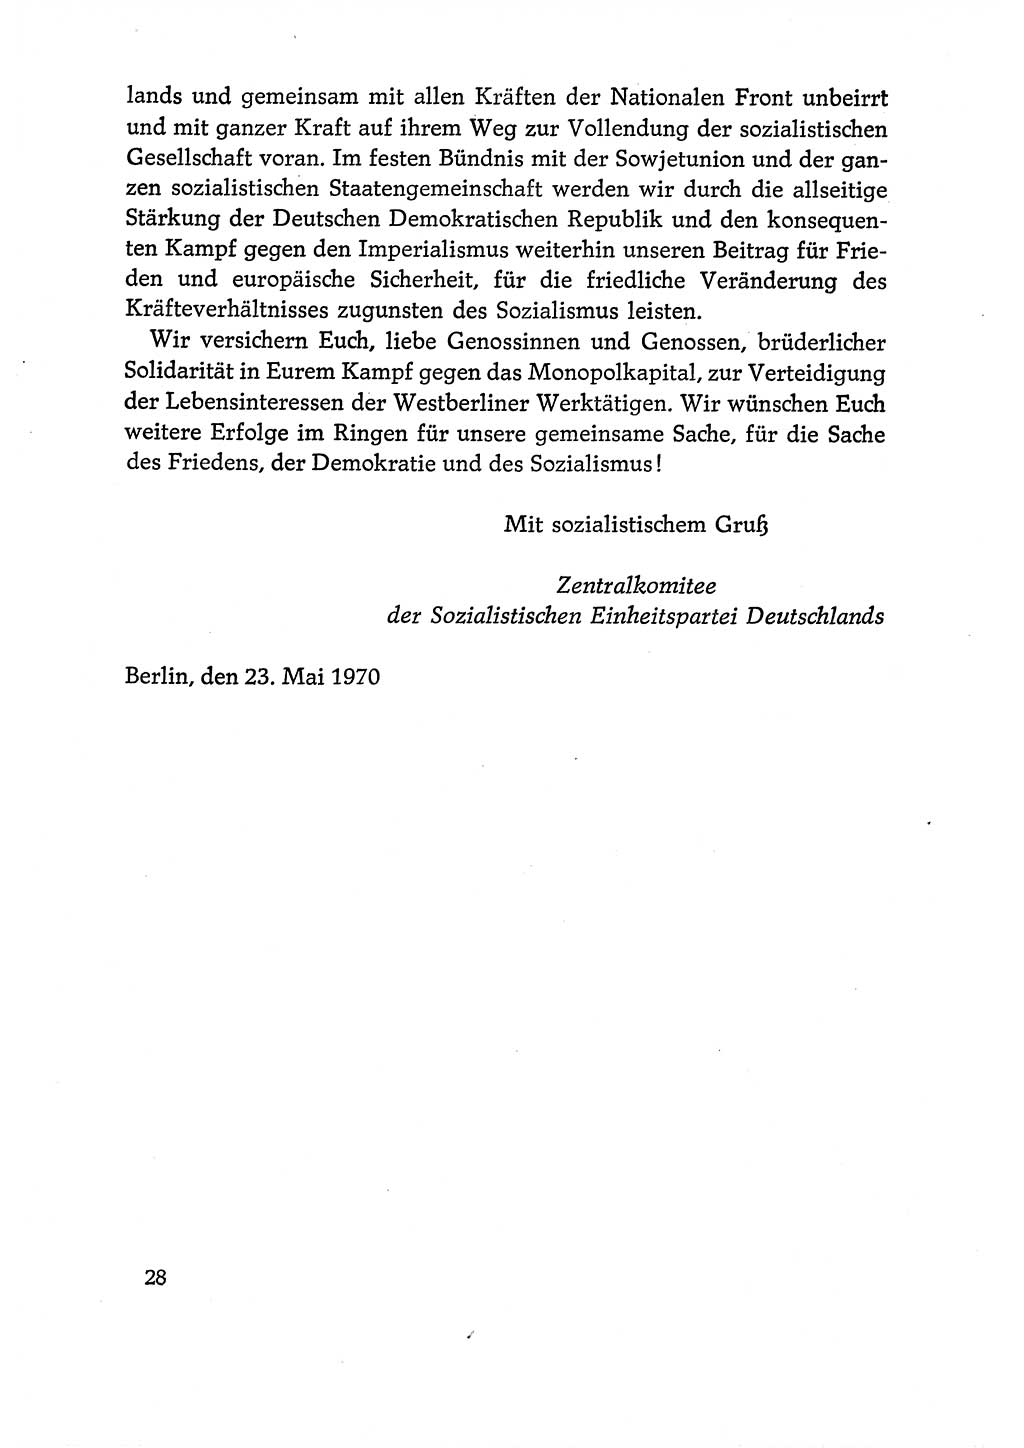 Dokumente der Sozialistischen Einheitspartei Deutschlands (SED) [Deutsche Demokratische Republik (DDR)] 1970-1971, Seite 28 (Dok. SED DDR 1970-1971, S. 28)